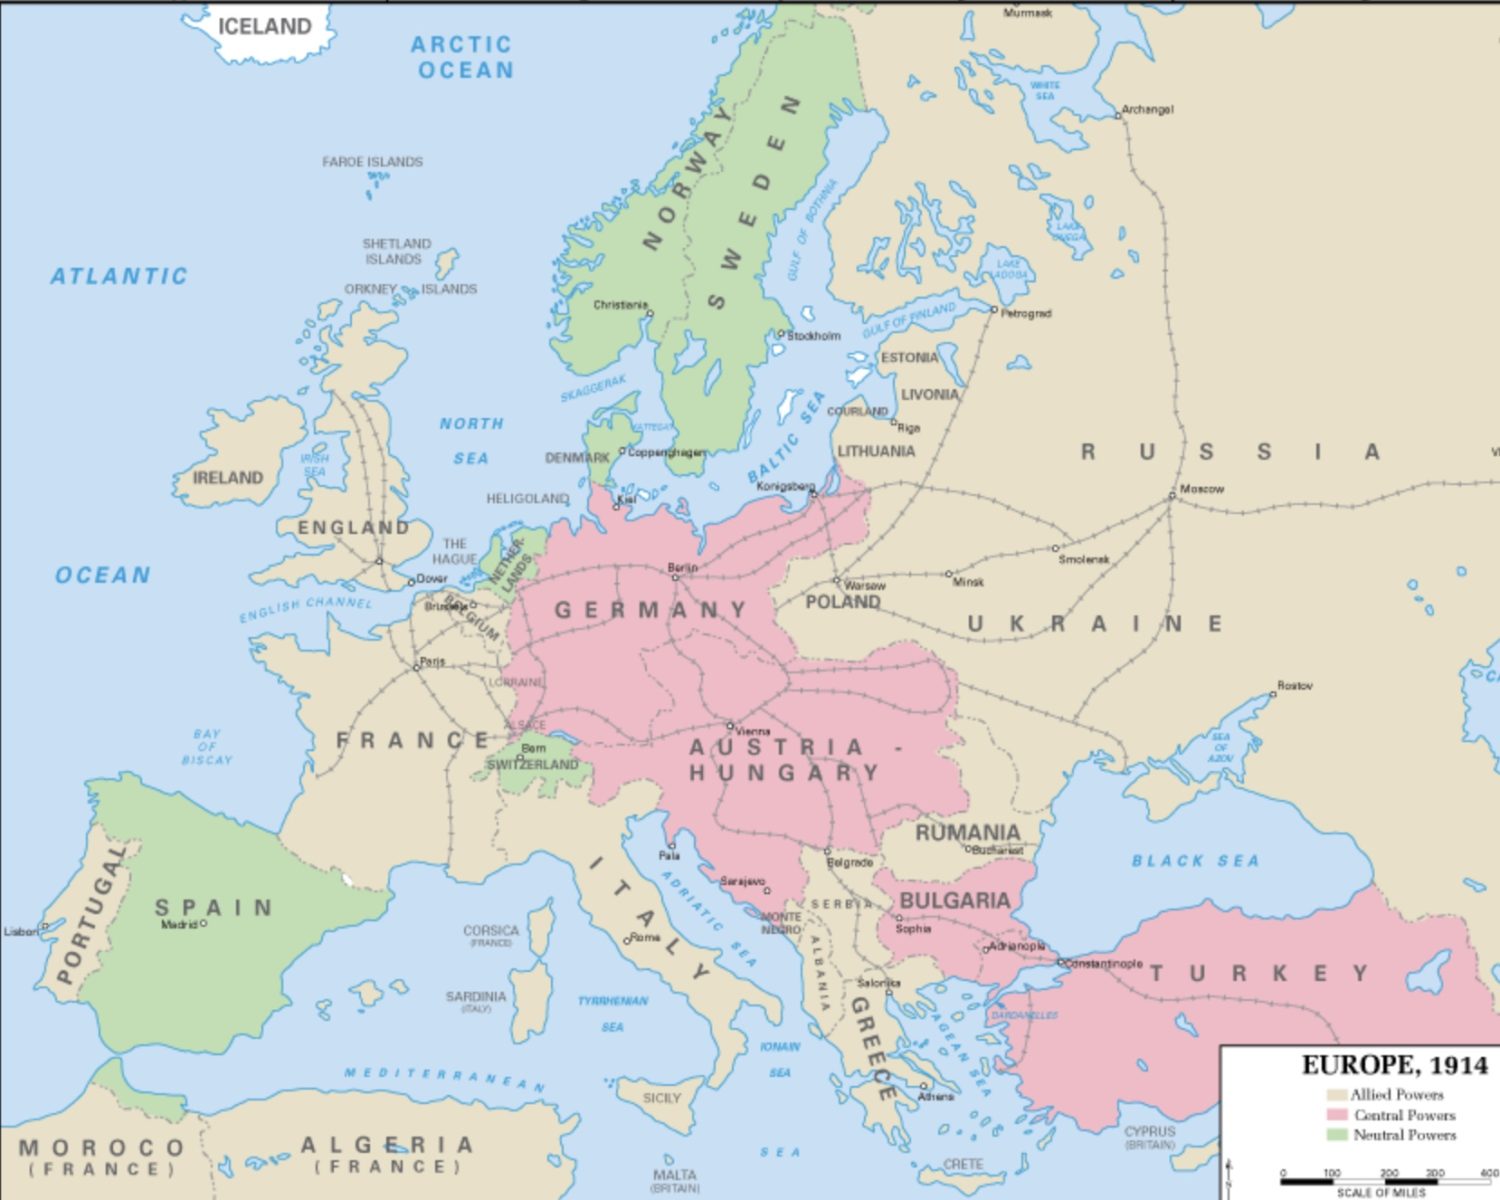 Europe in World War One